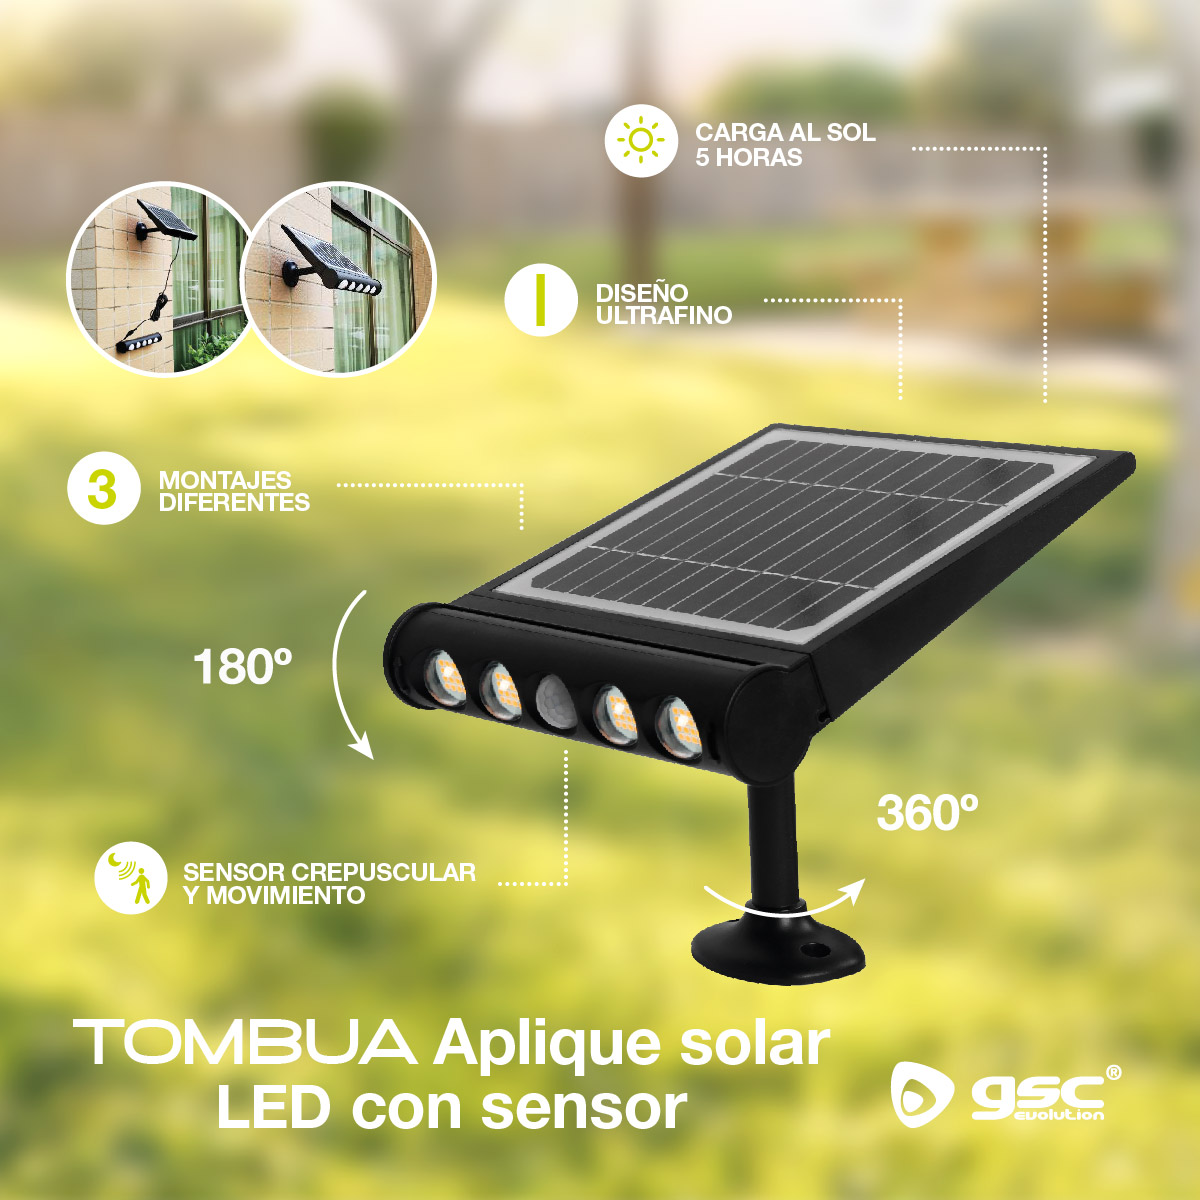 Aplique solar LED Tombua con sensor movimiento y crepuscular 8W 6000K Negro